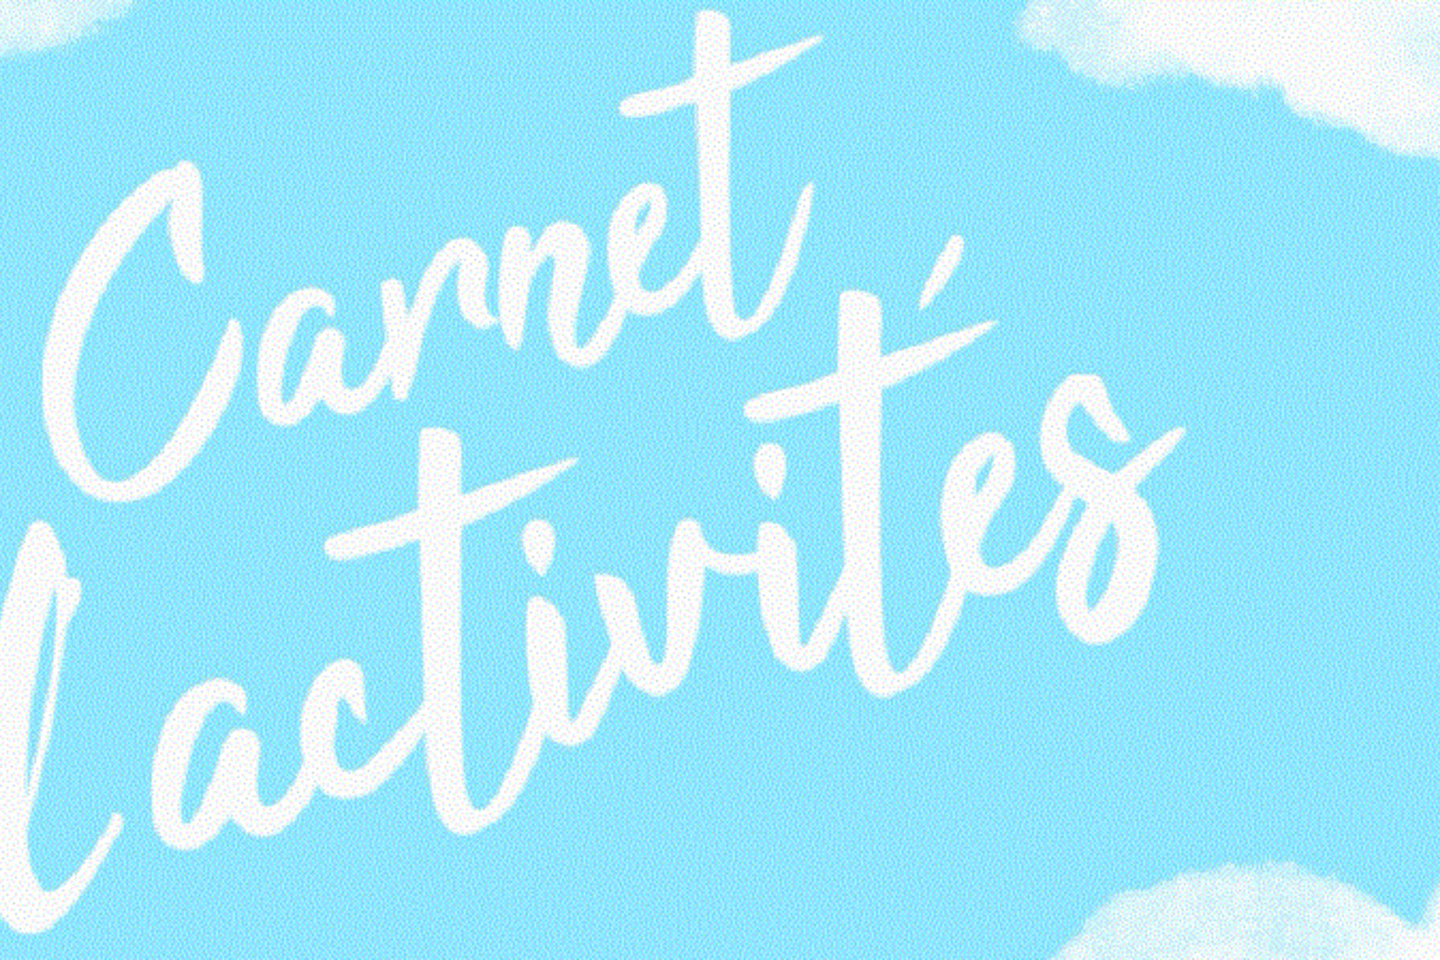 100 activités ludiques et créatives 